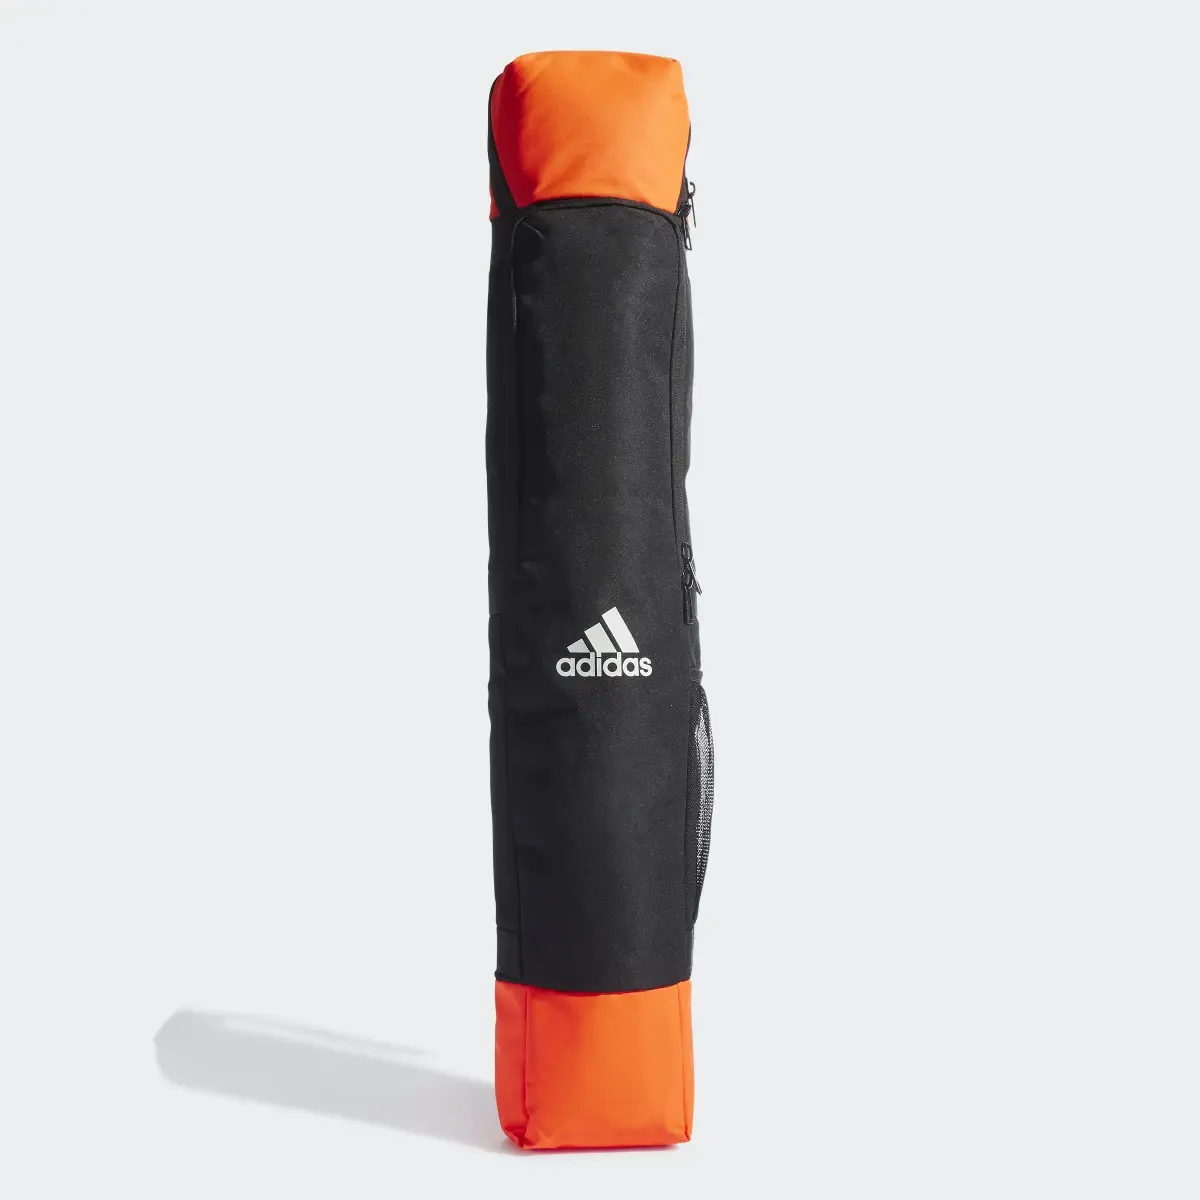 Adidas VS2 Stick Bag. 2